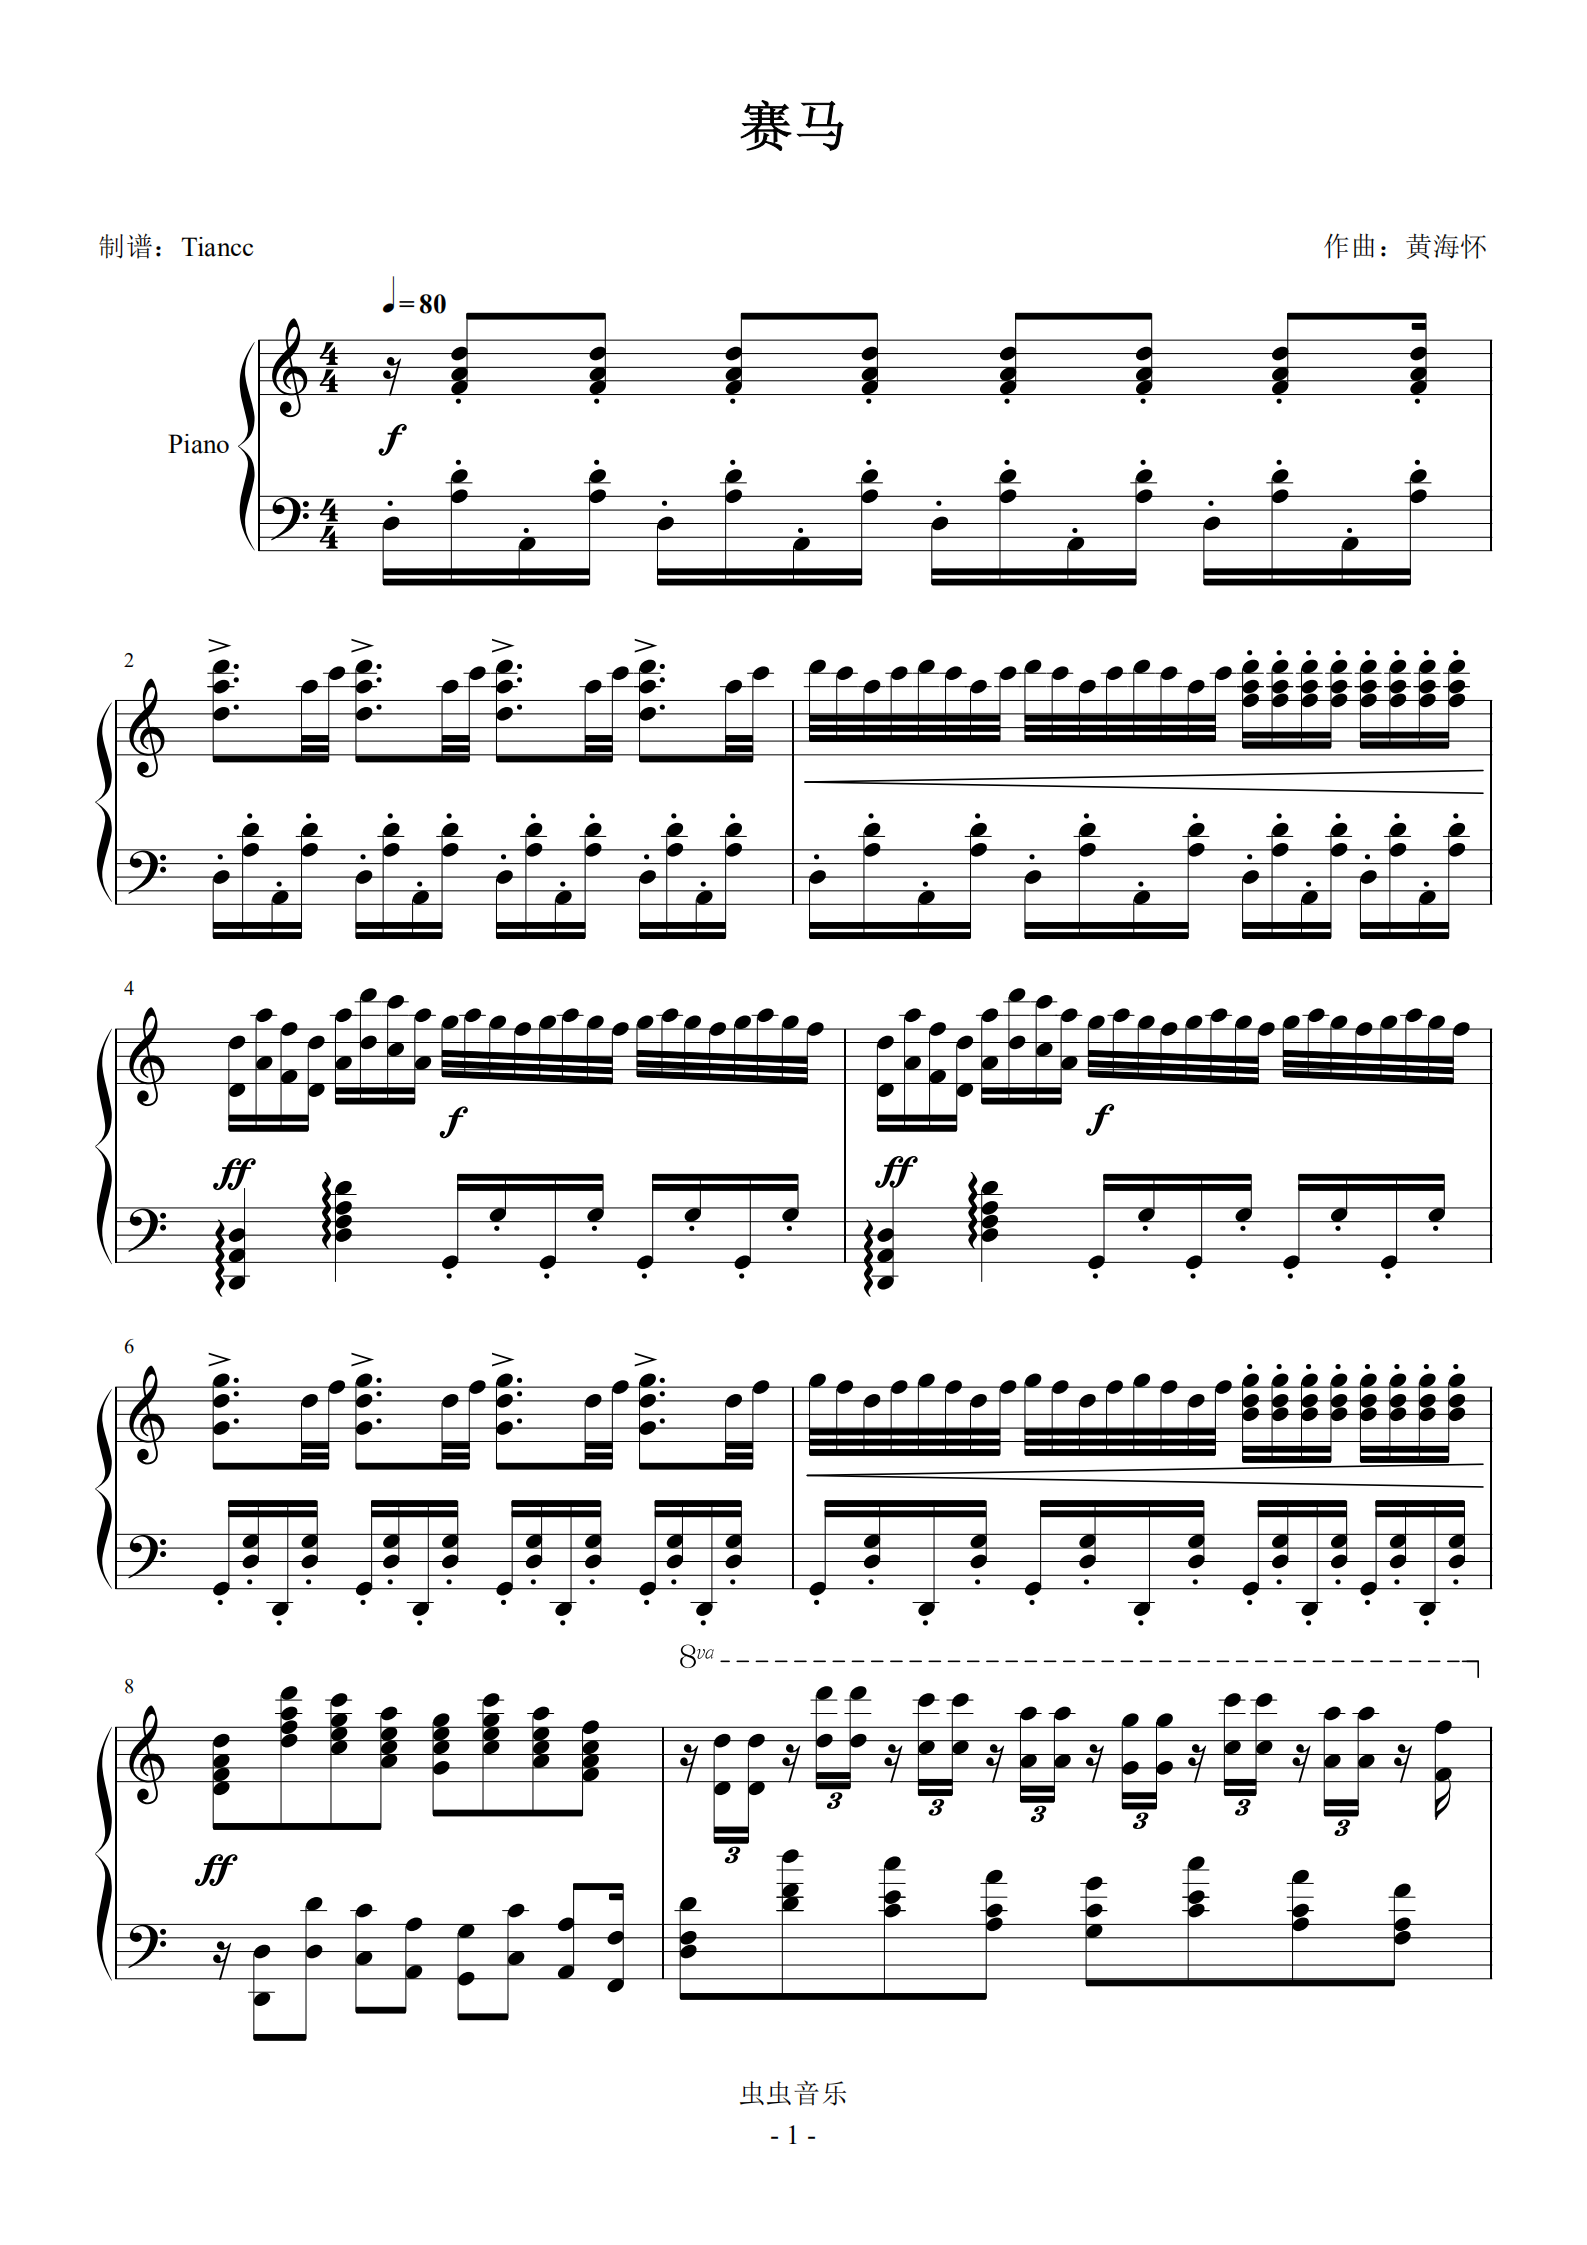 首页 钢琴谱库 《赛马》,完美可弹谱,演奏级改编二胡名曲